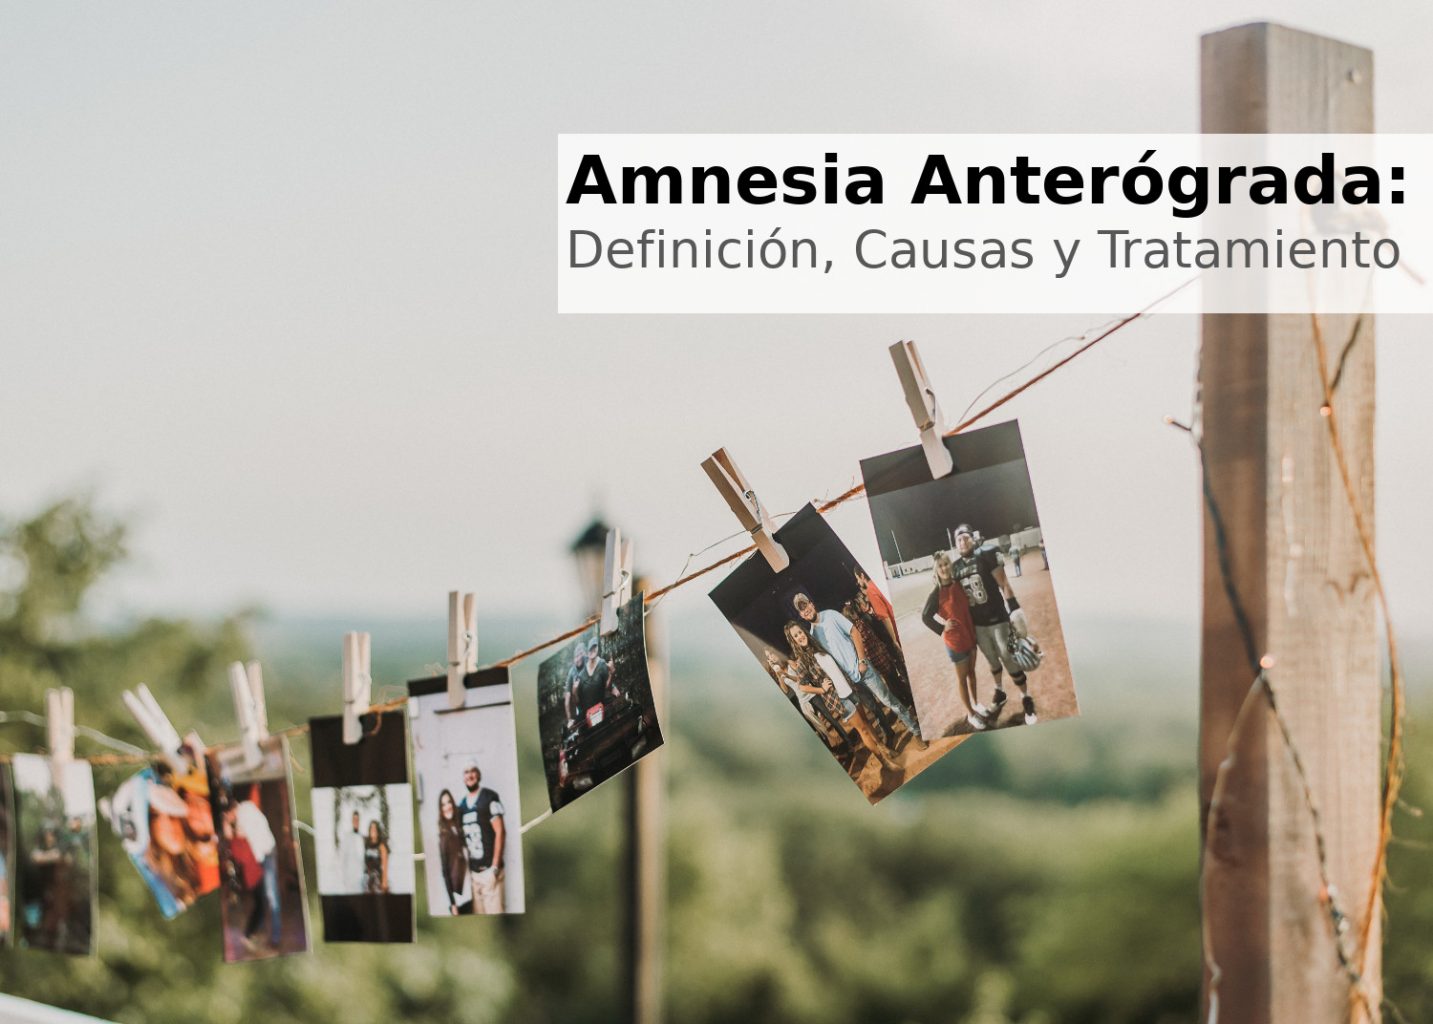 Amnesia anterógrada: Definición, Causas y Tratamiento